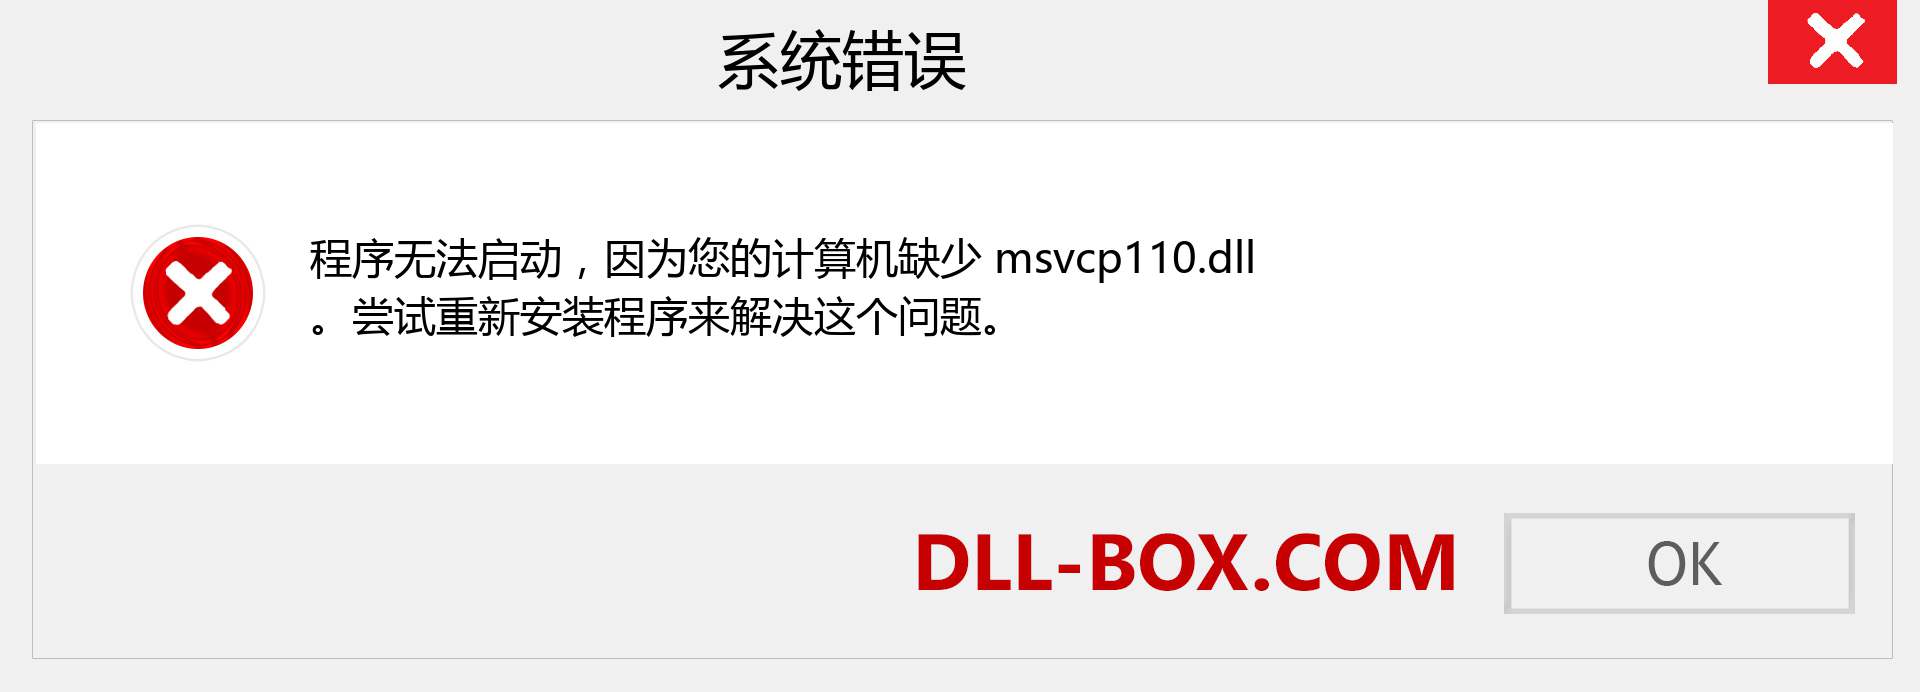 msvcp110.dll 文件丢失？。 适用于 Windows 7、8、10 的下载 - 修复 Windows、照片、图像上的 msvcp110 dll 丢失错误